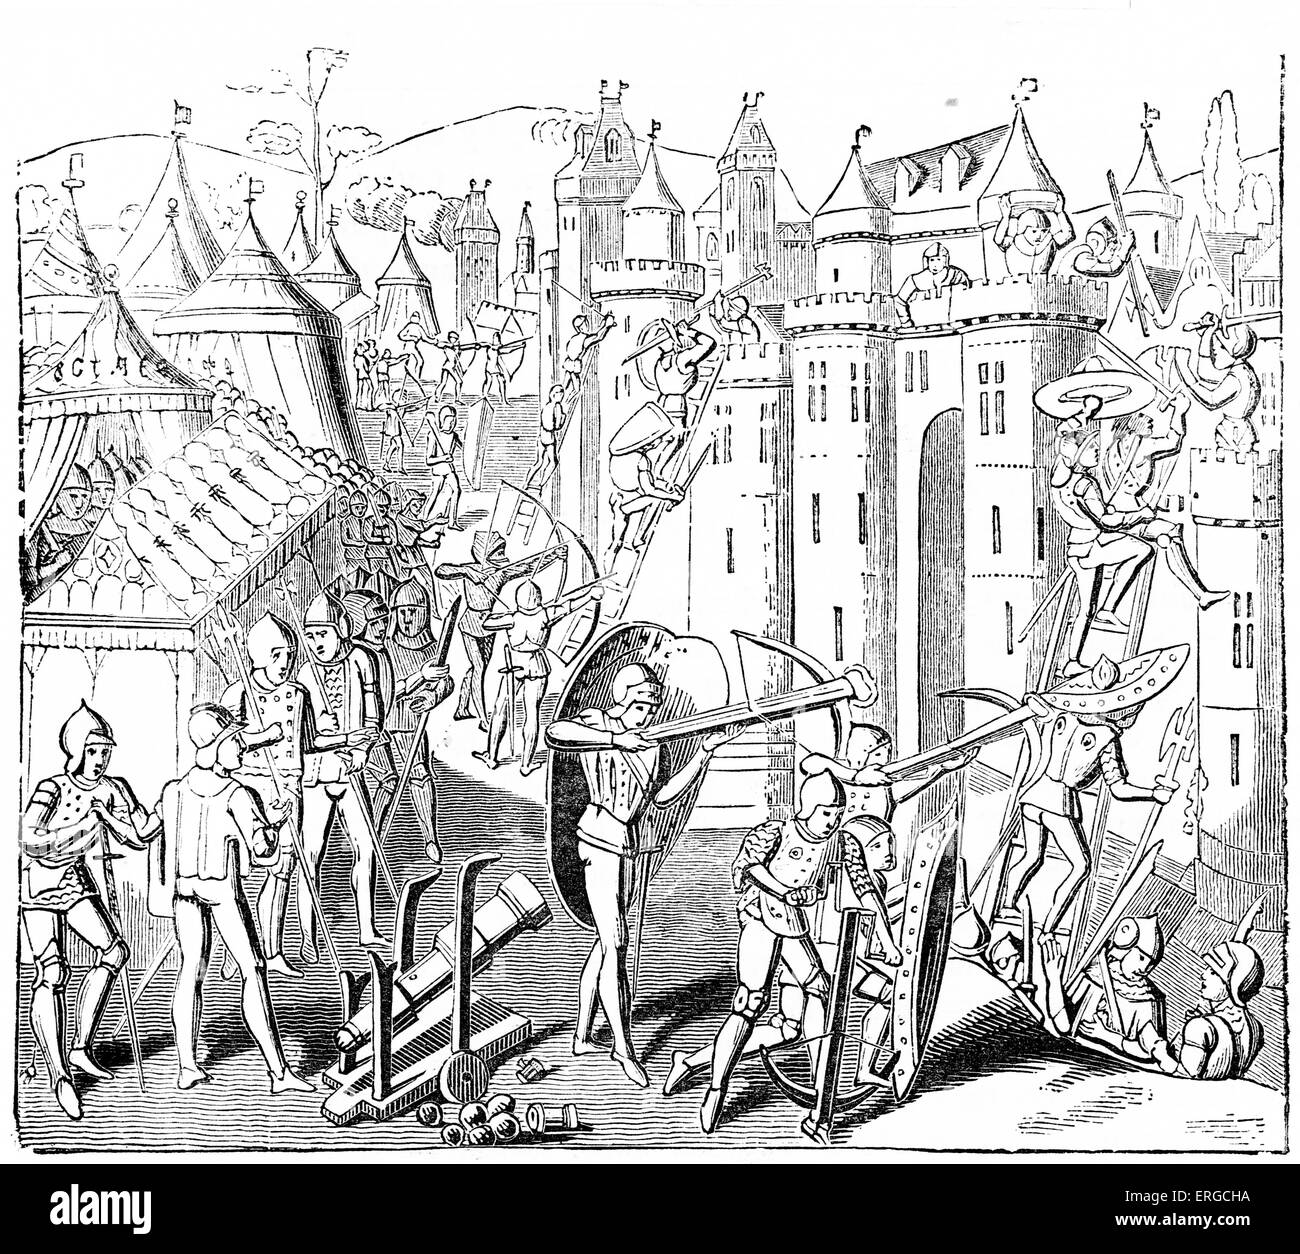 Assalto a Fort - XII secolo. Con Canon e degli arcieri salendo un muro di castello. Da incisione basata sul manoscritto illuminato Foto Stock